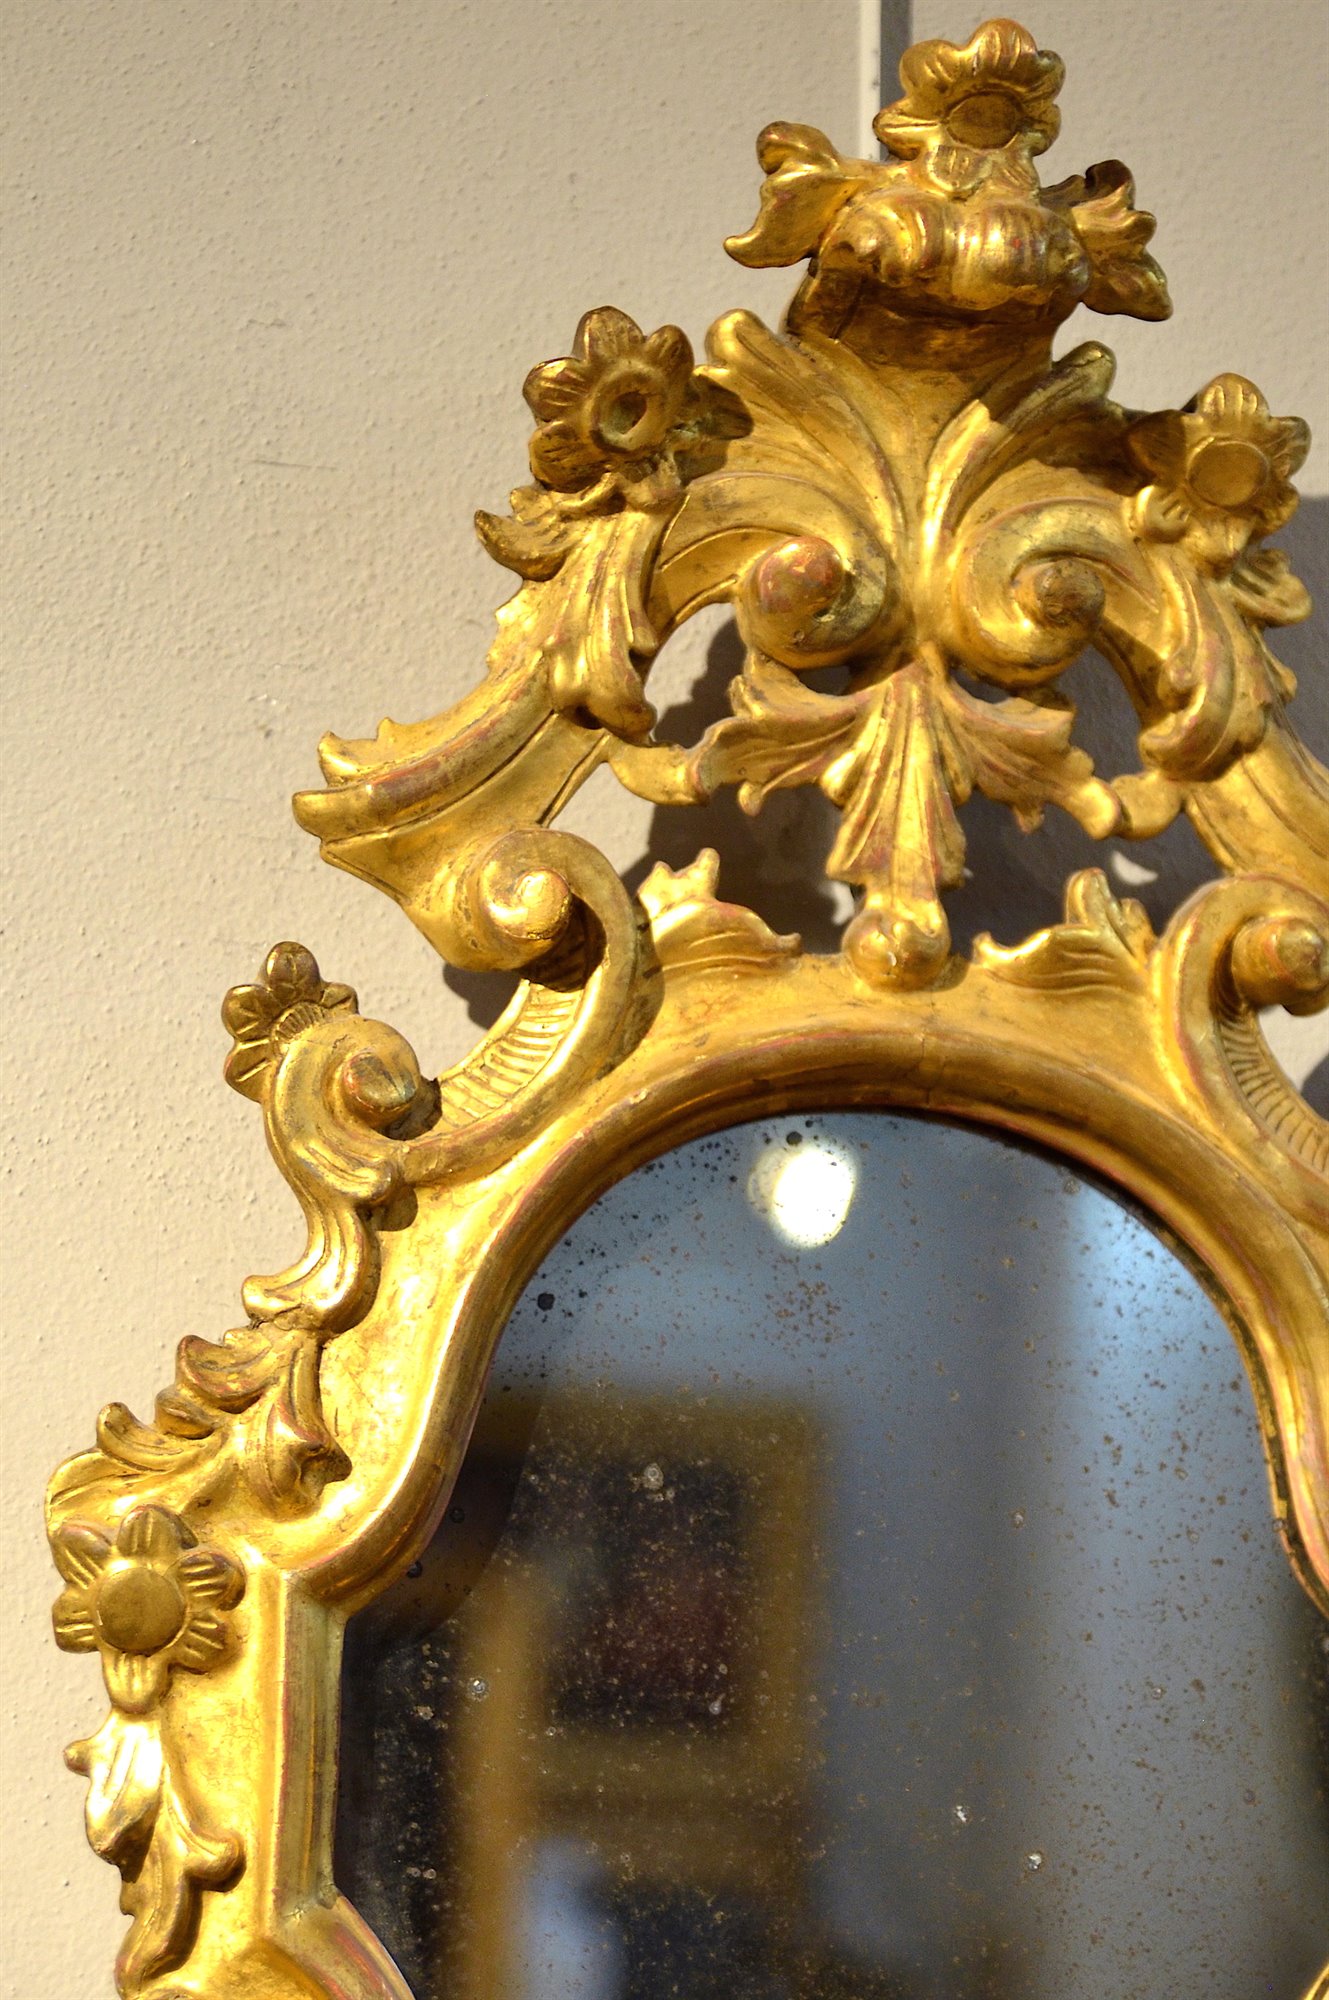 Coppia di splendide specchiere in legno dorato ed intagliato